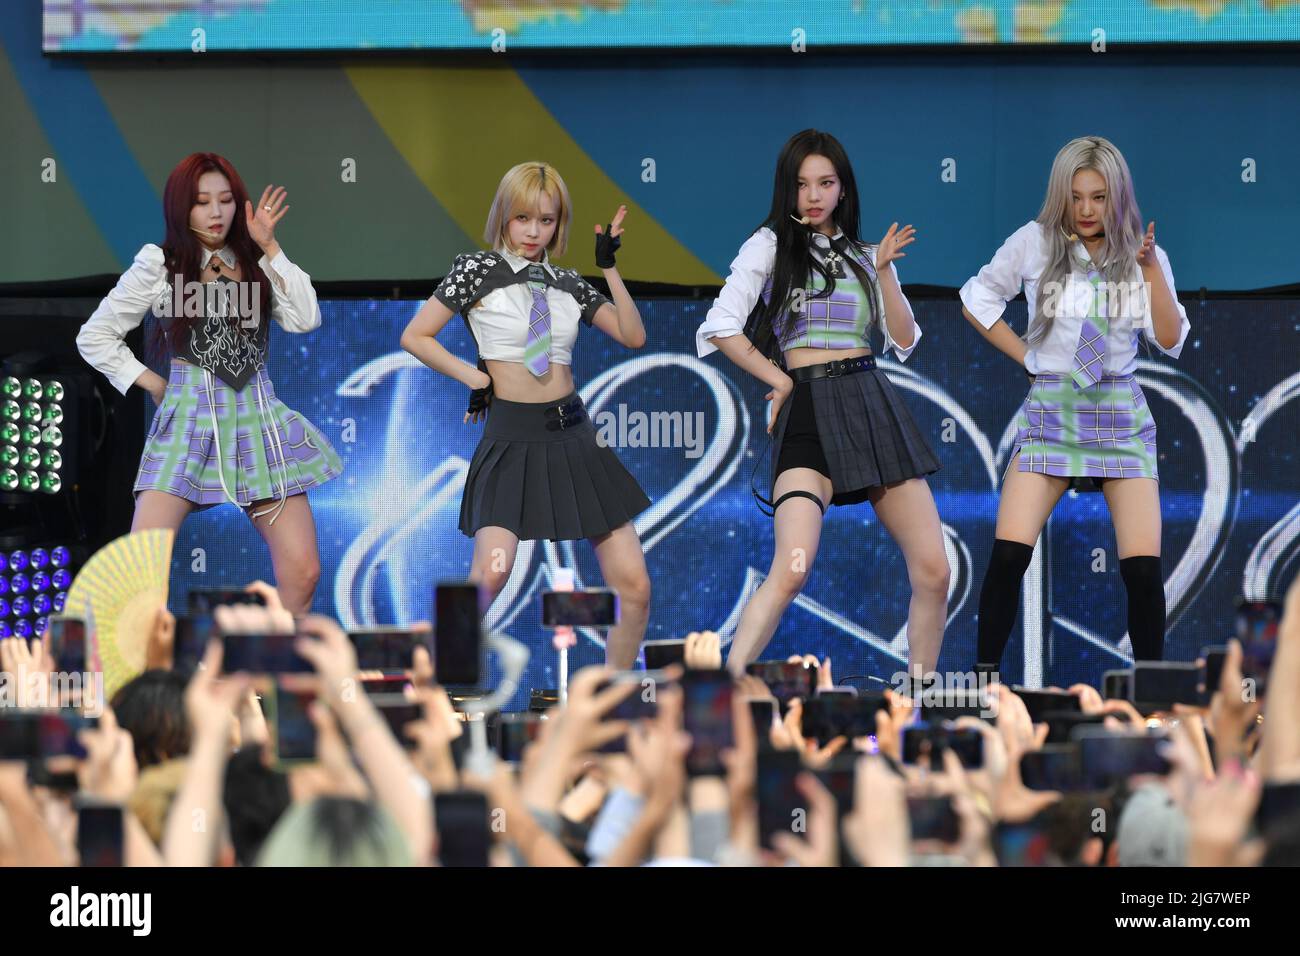 Le groupe de jeunes filles de K-Pop aespa se produit sur scène lors de la série de concerts d'été "Good Morning America" à Central Park sur 8 juillet 2022 à New York. Banque D'Images